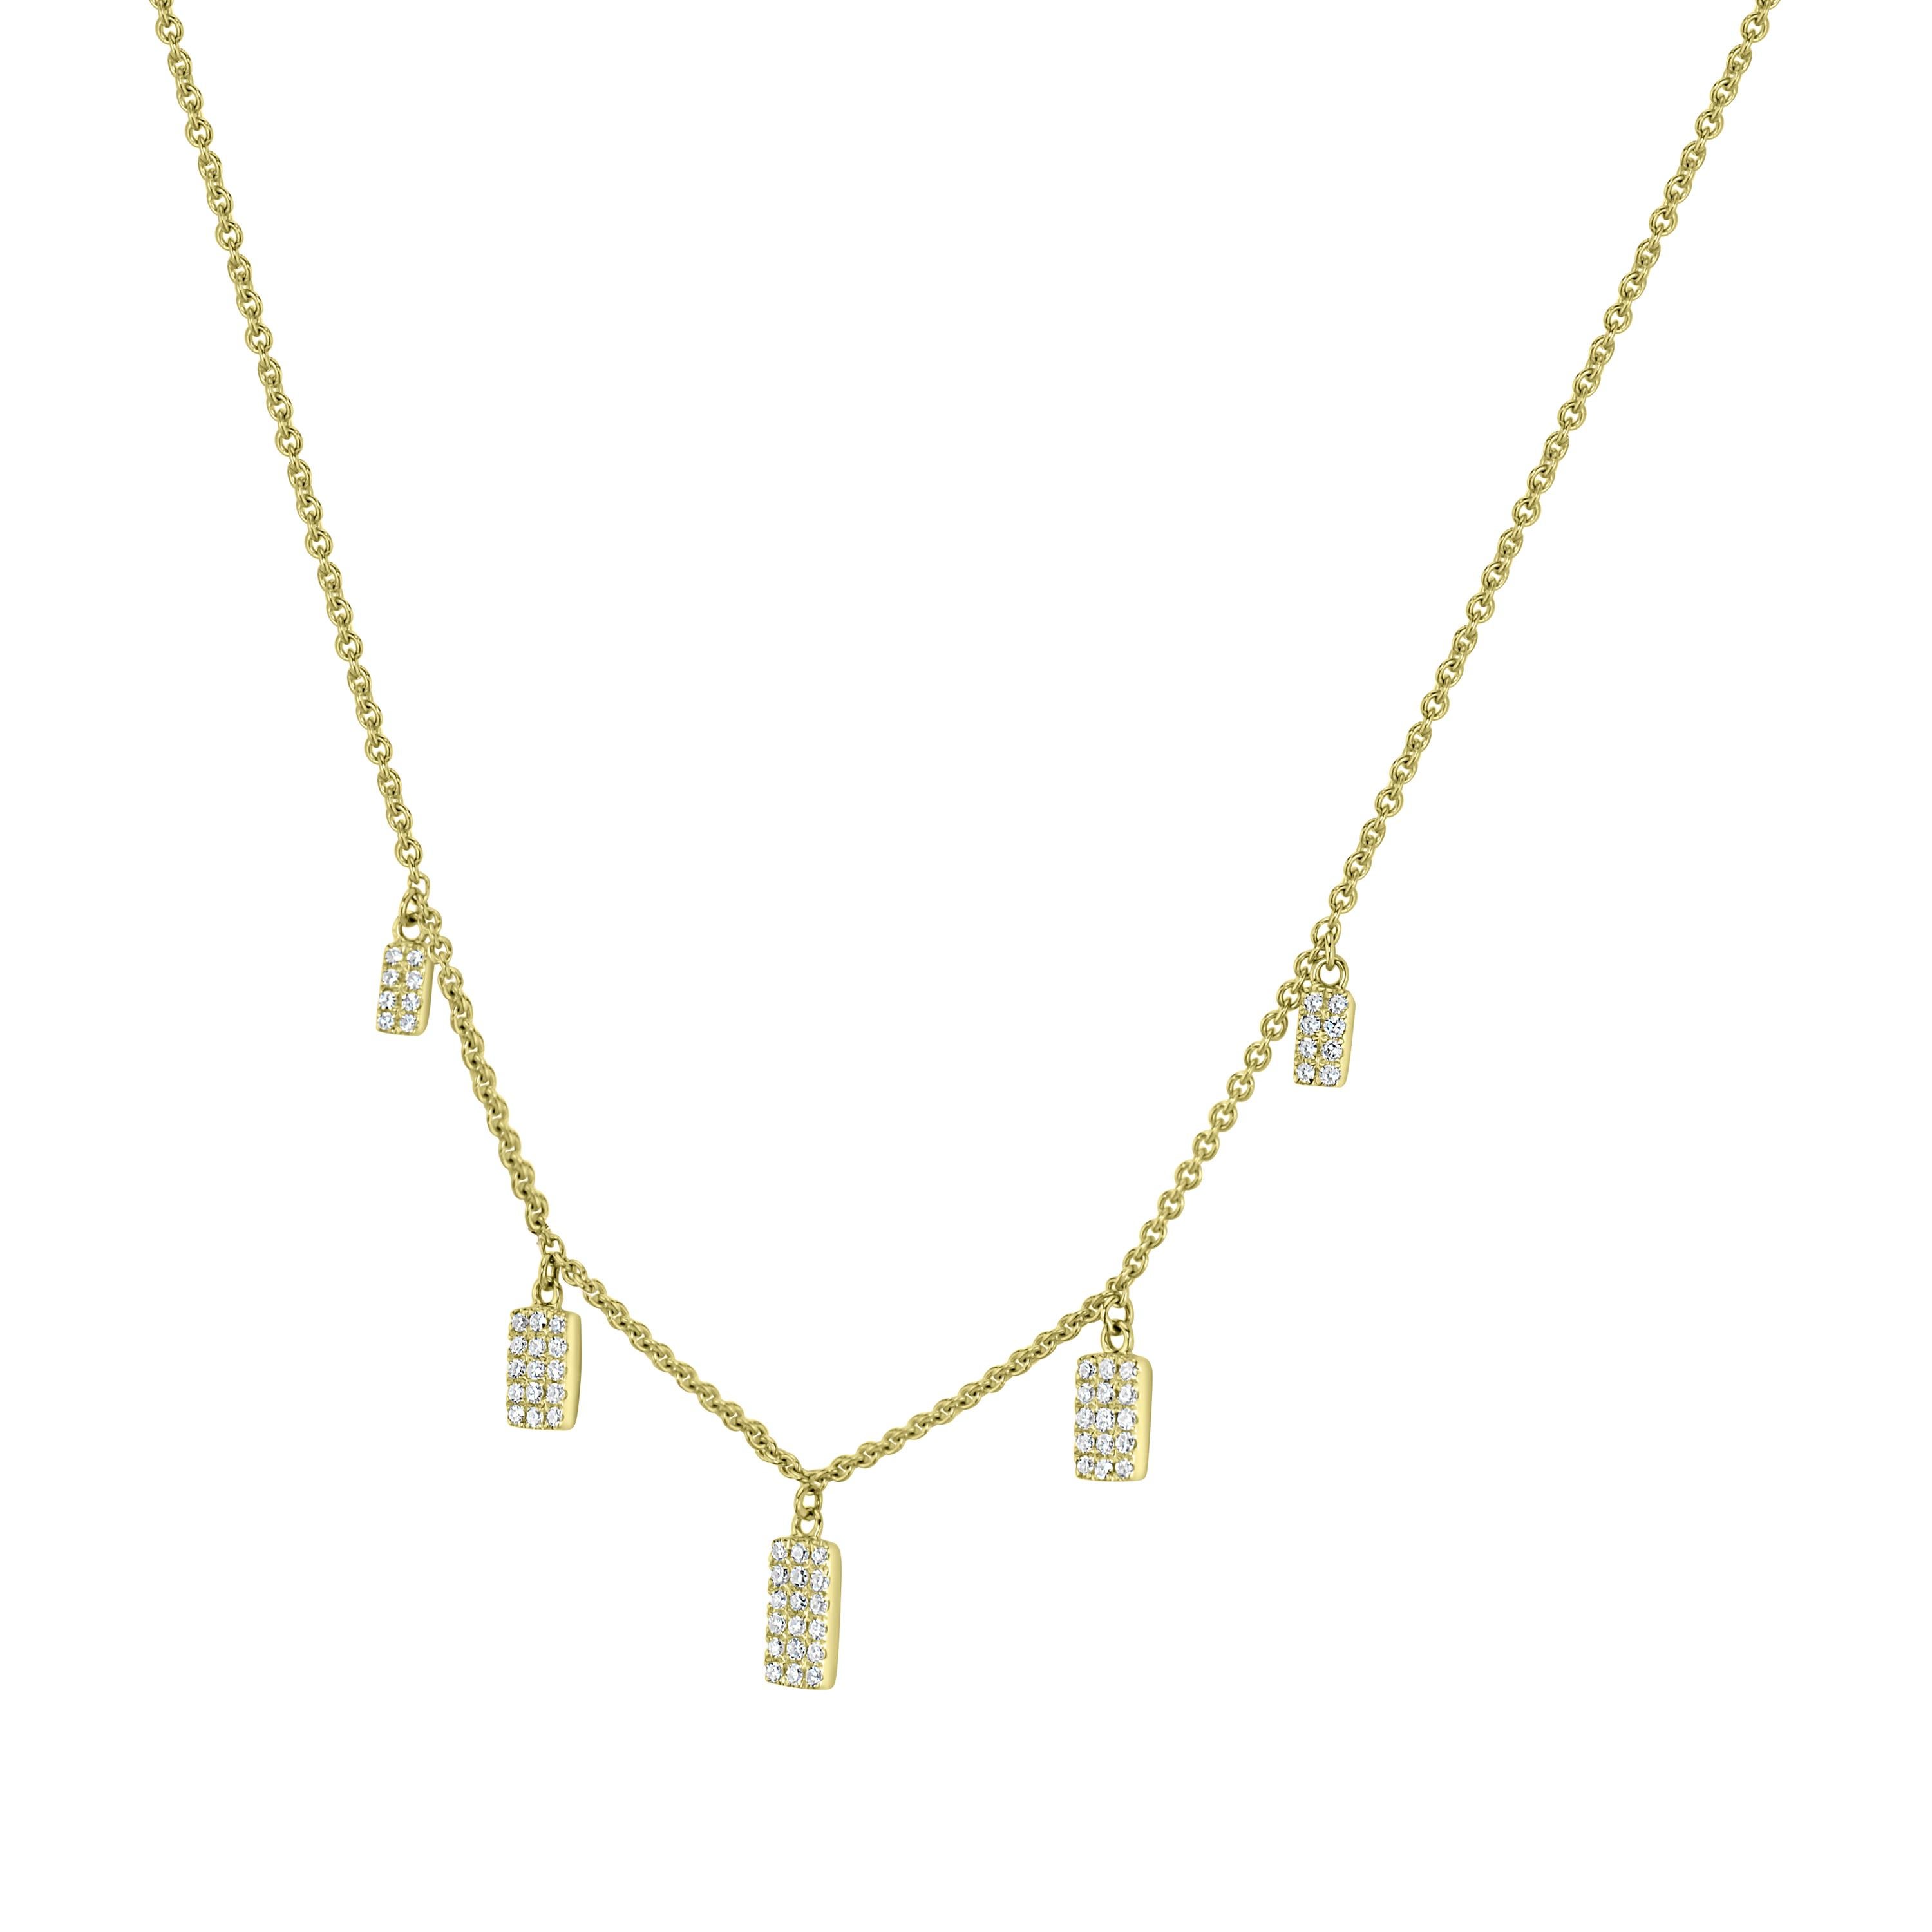 Wir haben für Sie das perfekte Accessoire zu jedem Outfit! Wir präsentieren eine Halskette mit glitzernden Charms aus runden Diamanten, die eine elegante Kabelkette aus 14 Karat Gelbgold von Luxle schmücken.

Bitte folgen Sie der Luxury Jewels